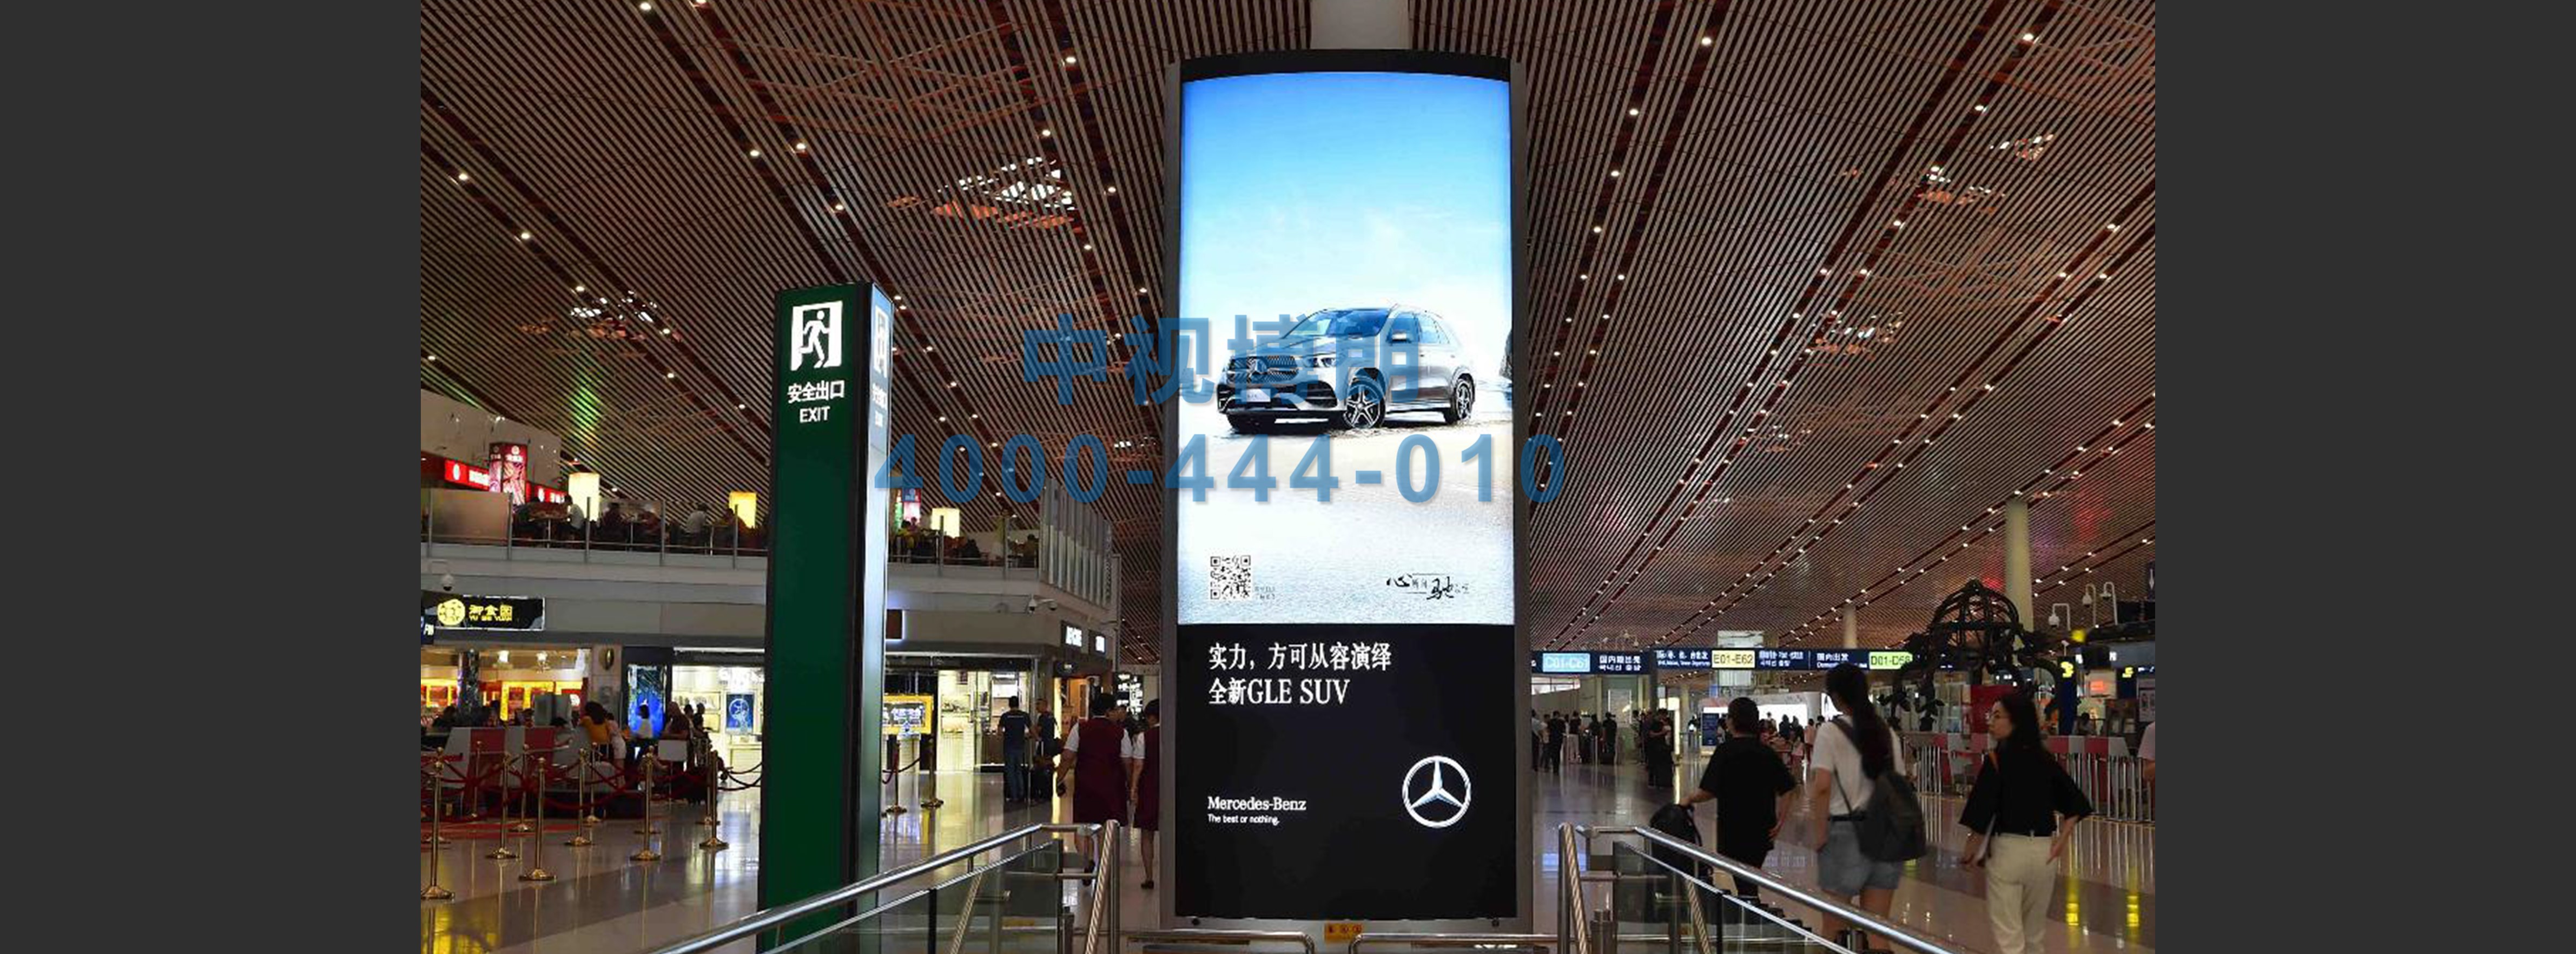 北京首都机场广告-T3出发大厅图腾灯箱J019